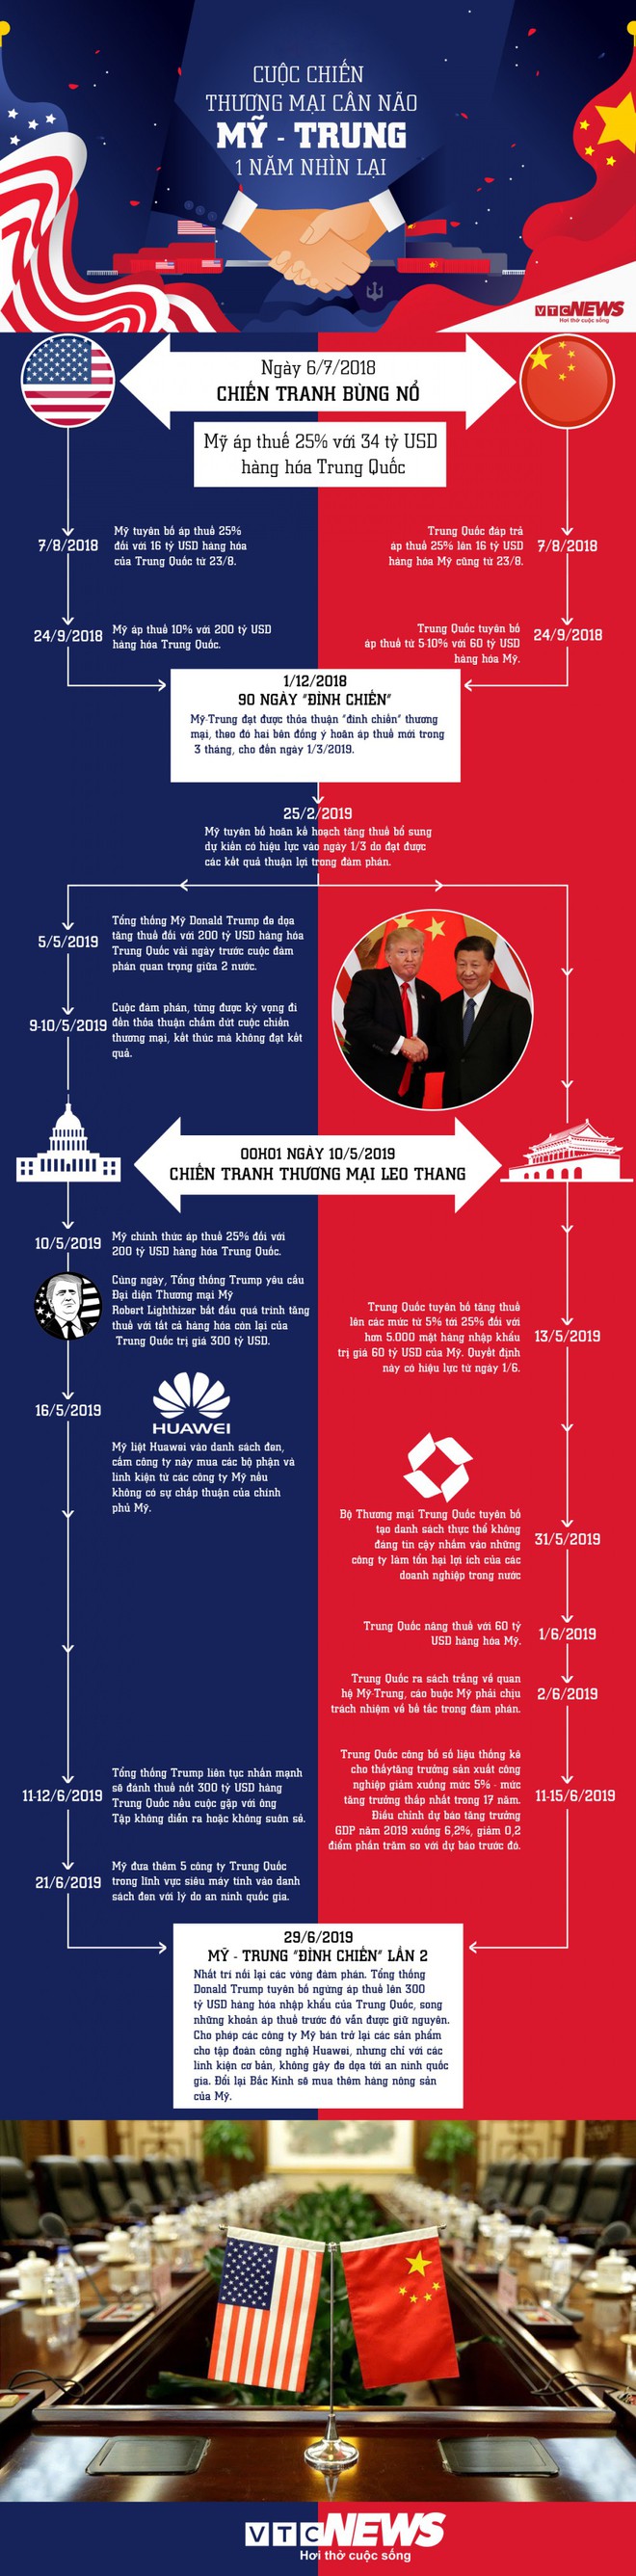 Infographic: Cuộc chiến thương mại cân não Mỹ-Trung, 1 năm nhìn lại - Ảnh 1.